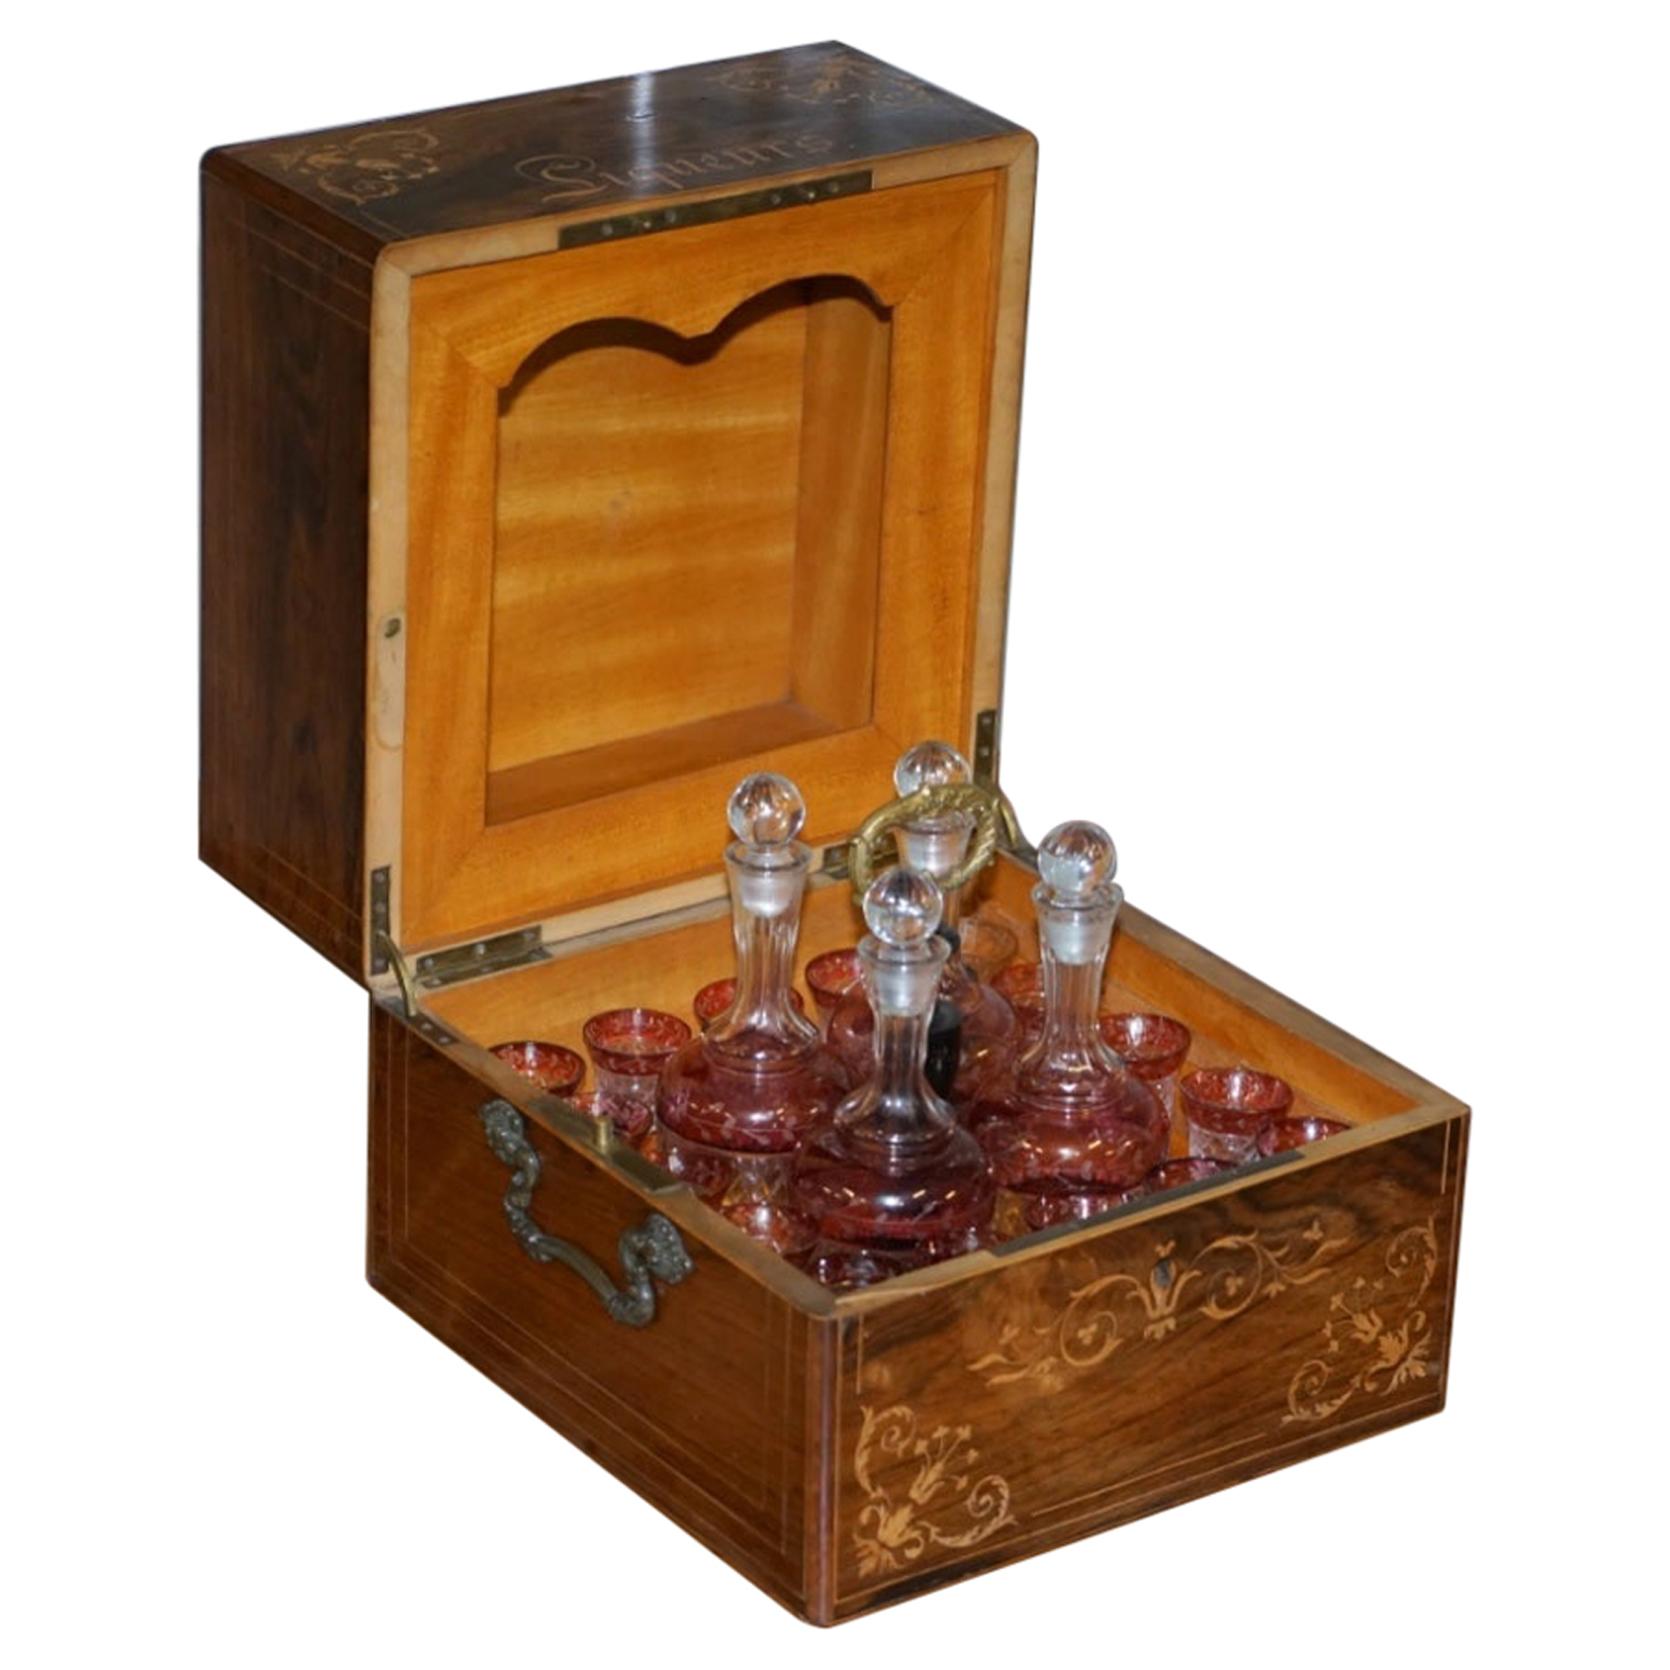 Sehr seltene viktorianische Hartholz-Likör-Box mit Preiselbeer Glas Karaffen Gläser